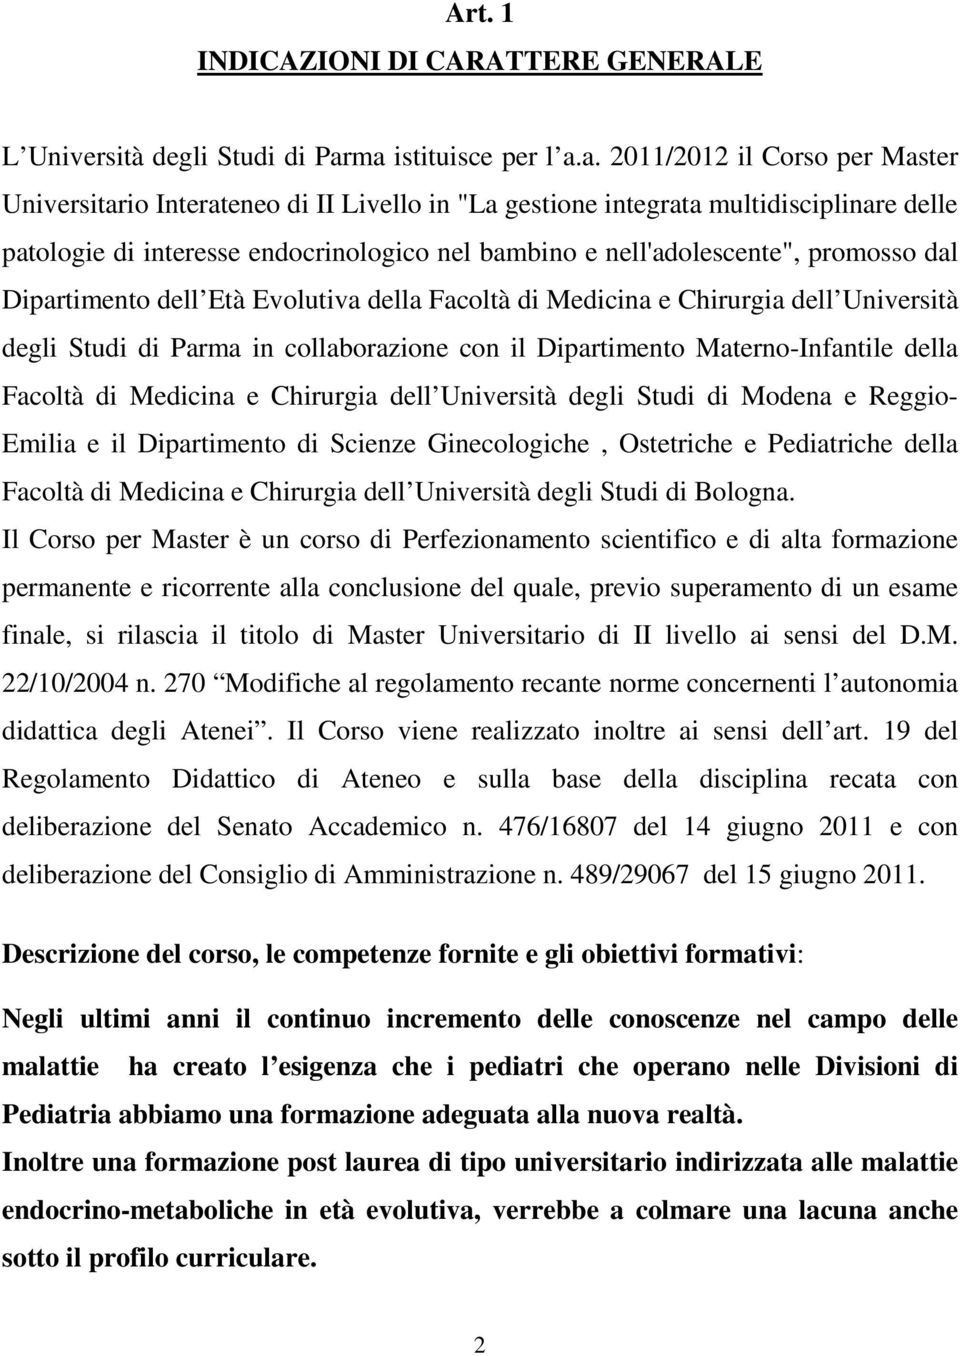 nell'adolescente", promosso dal Dipartimento dell Età Evolutiva della Facoltà di Medicina e Chirurgia dell Università degli Studi di Parma in collaborazione con il Dipartimento Materno-Infantile